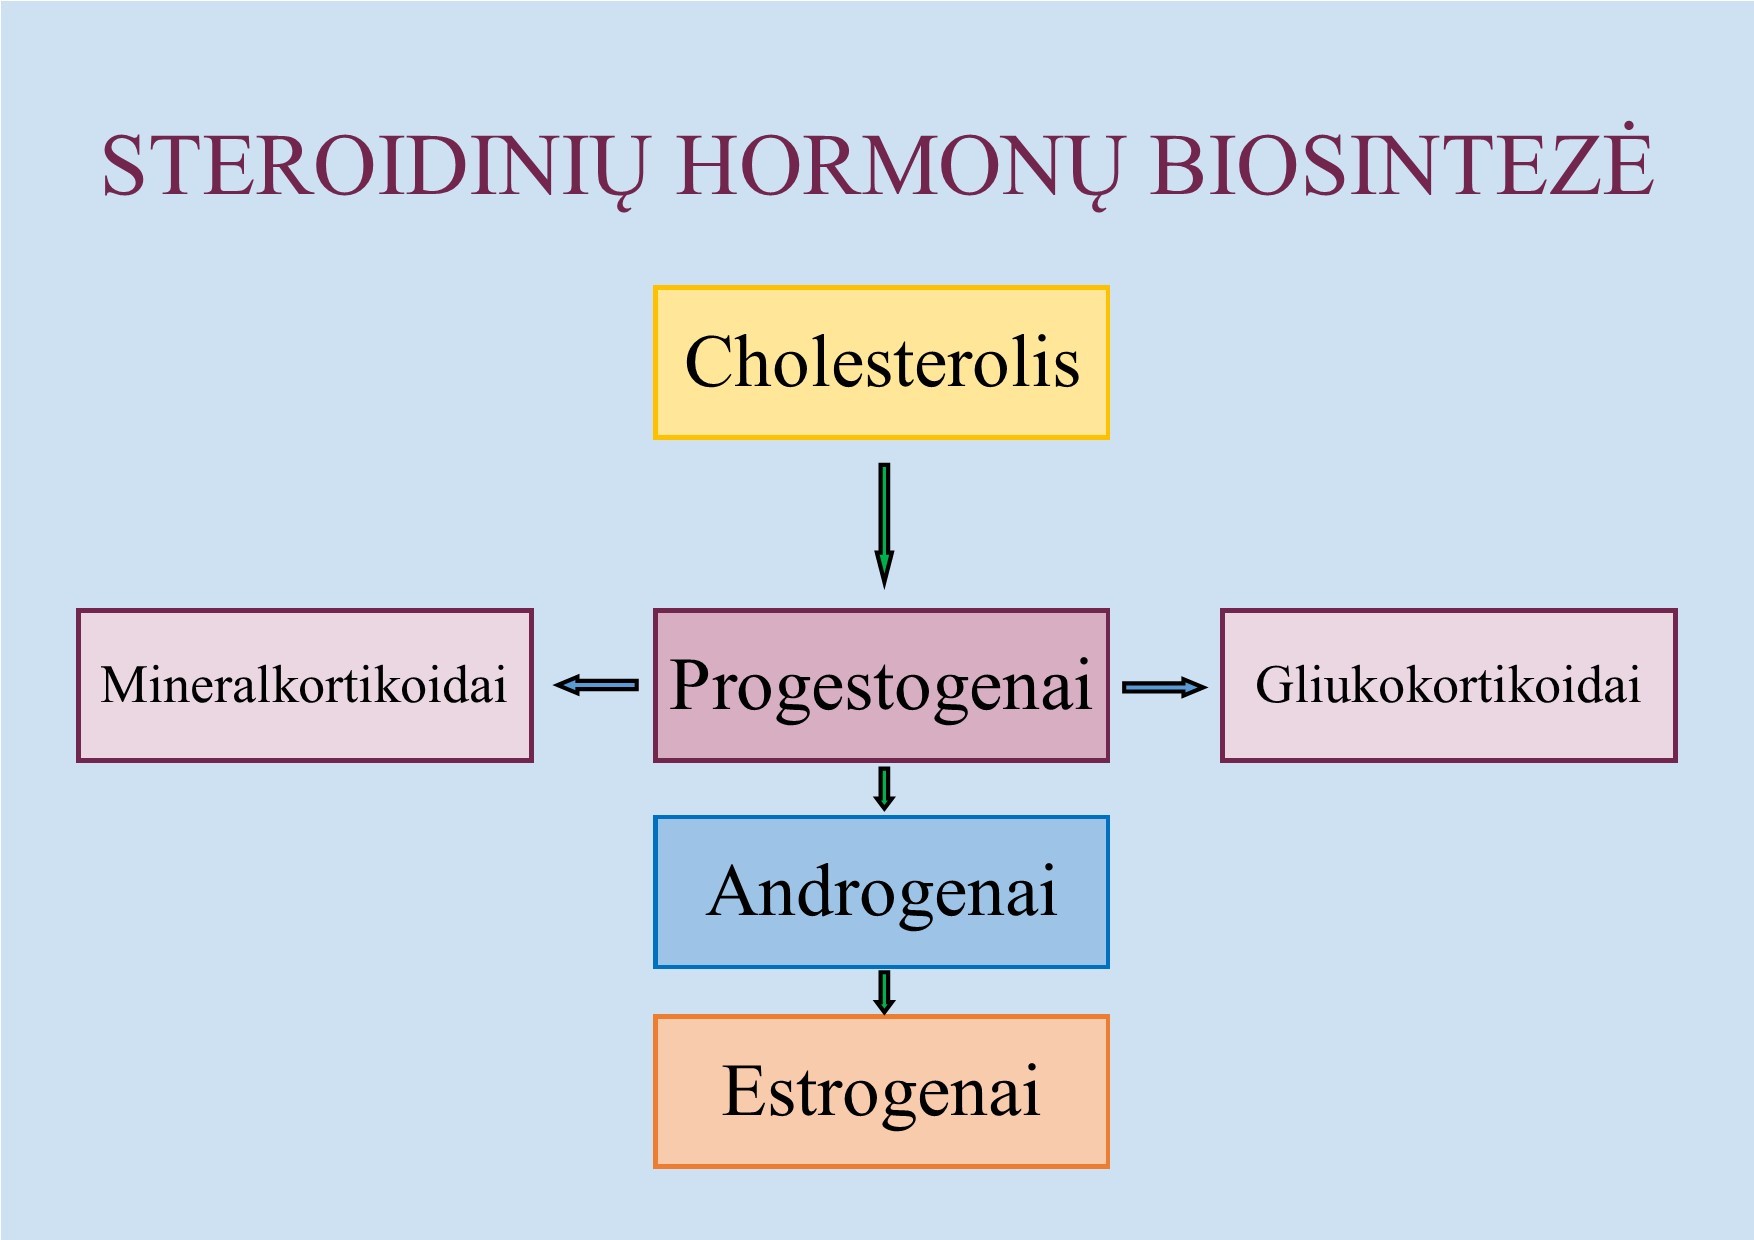 Steroidinių hormonų biosintezė